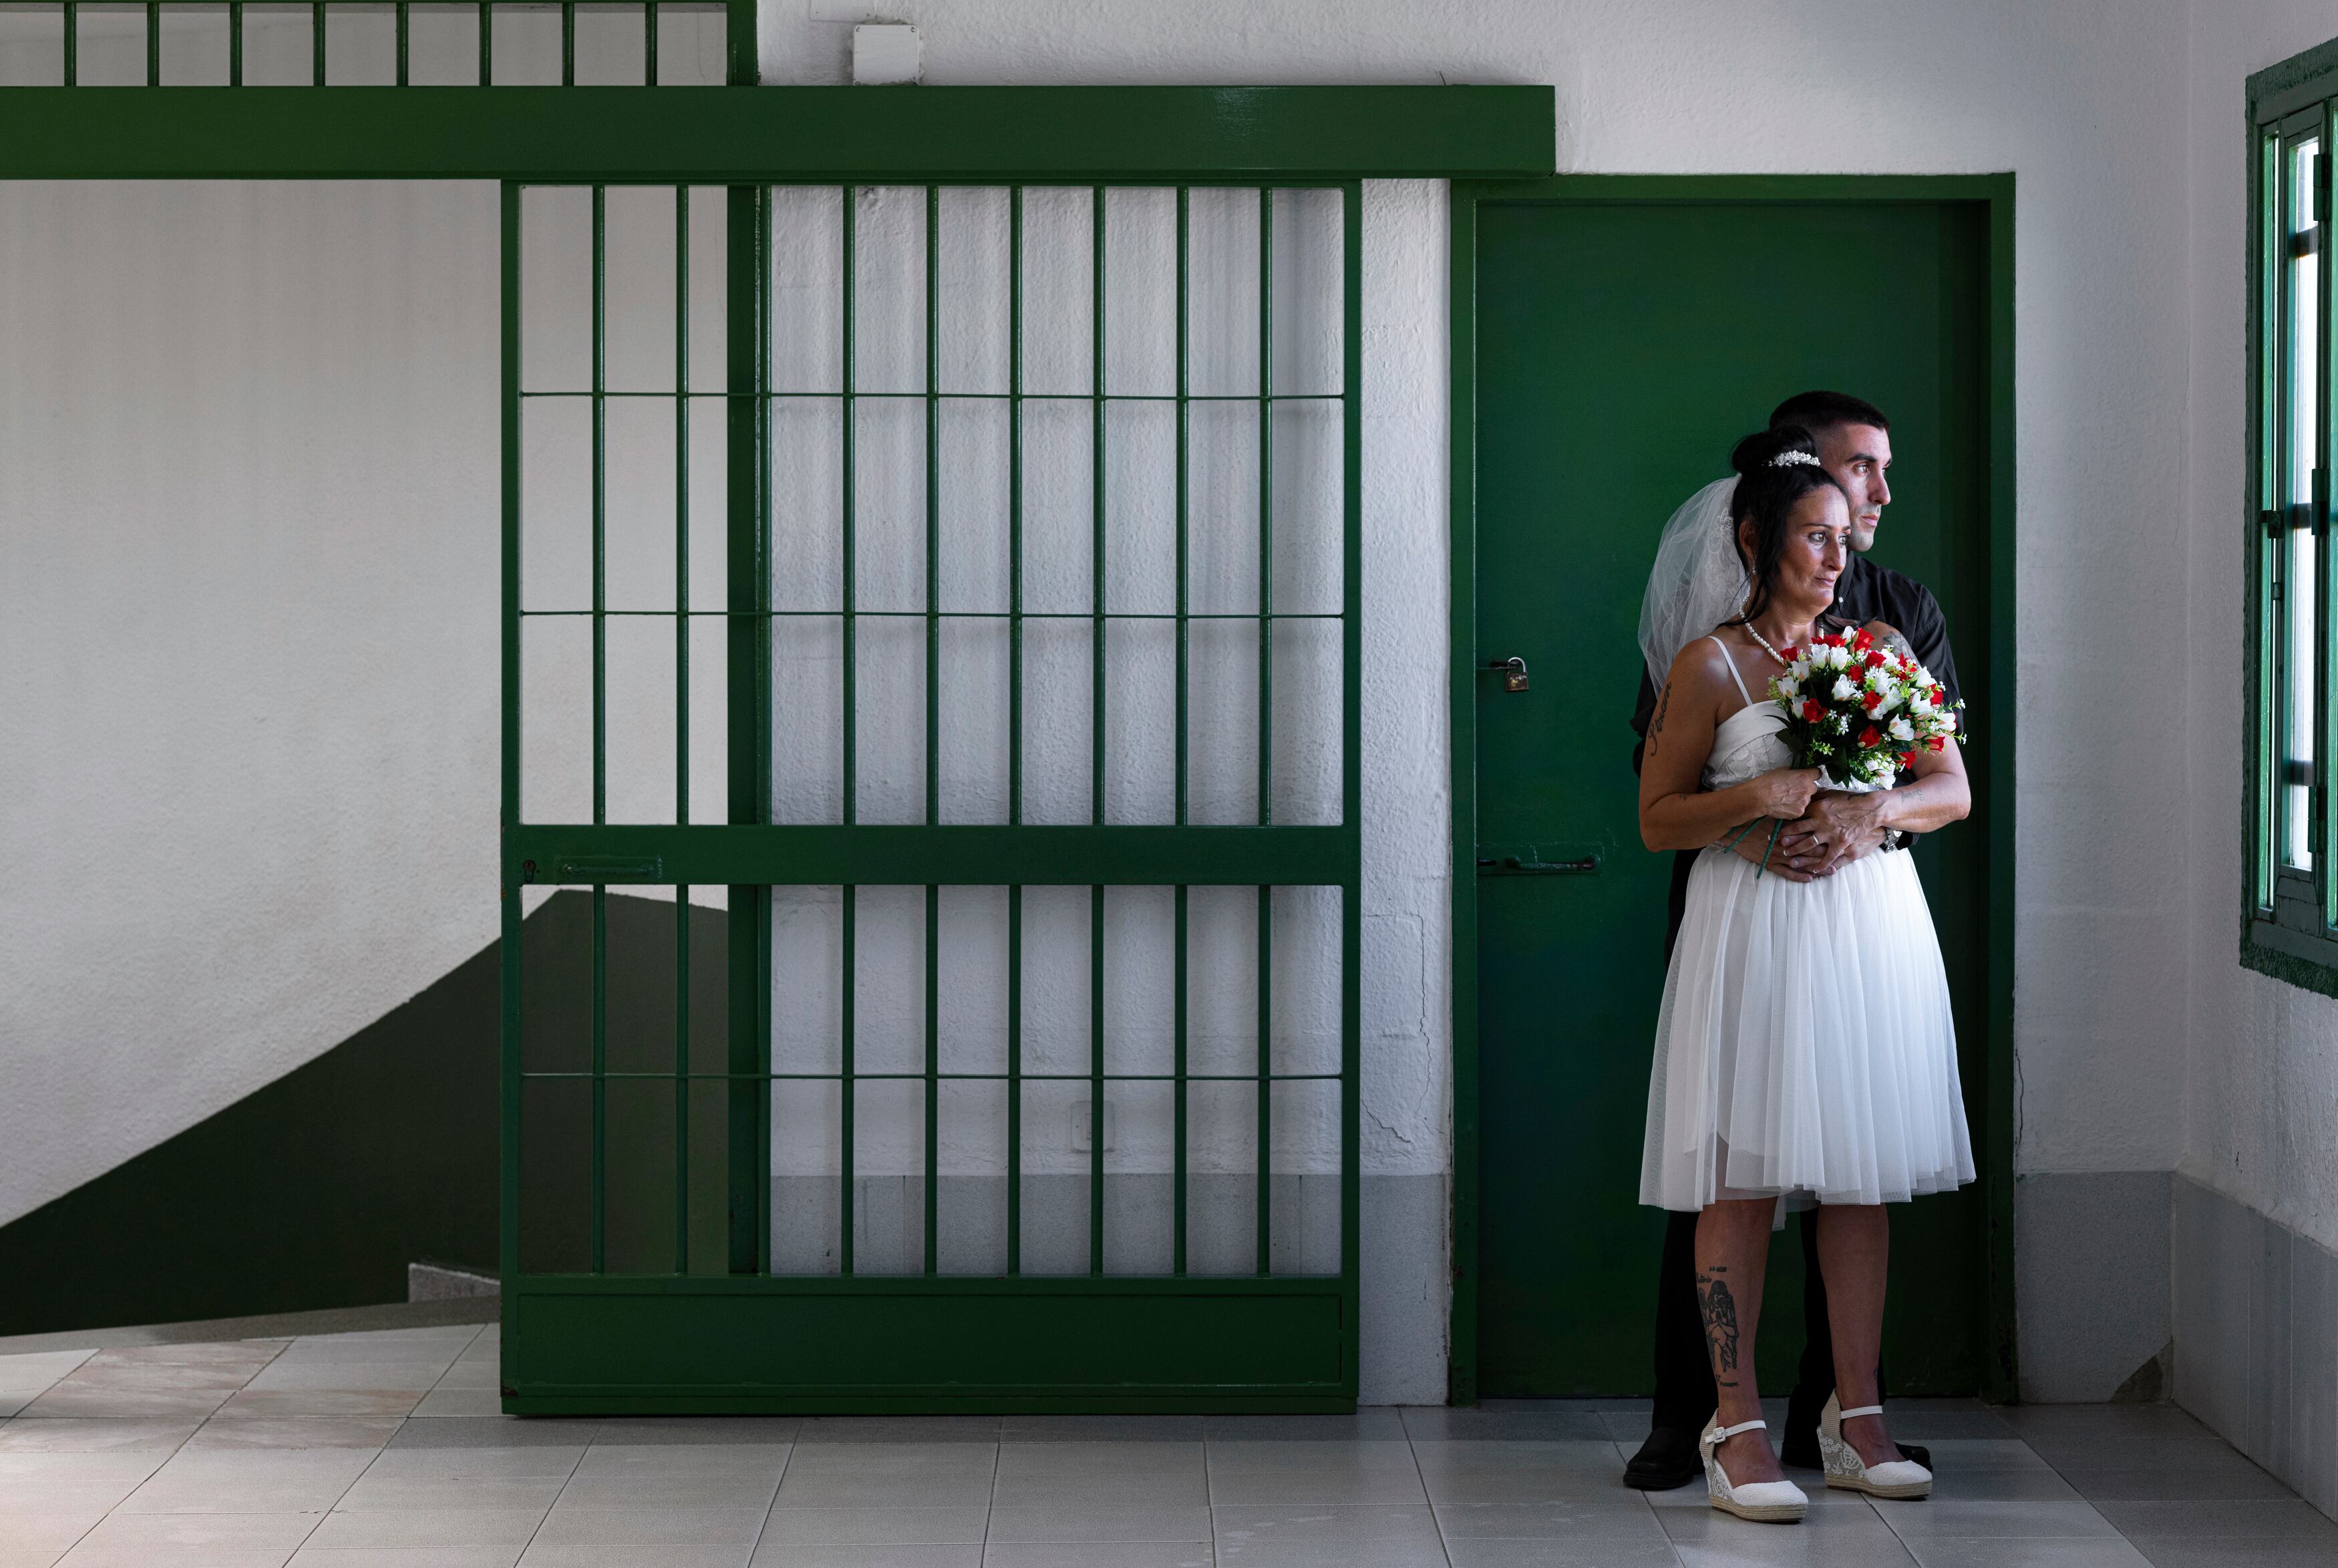 Rubén Millet y Mónica Martínez, que se conocieron en prisión, el día de su boda.